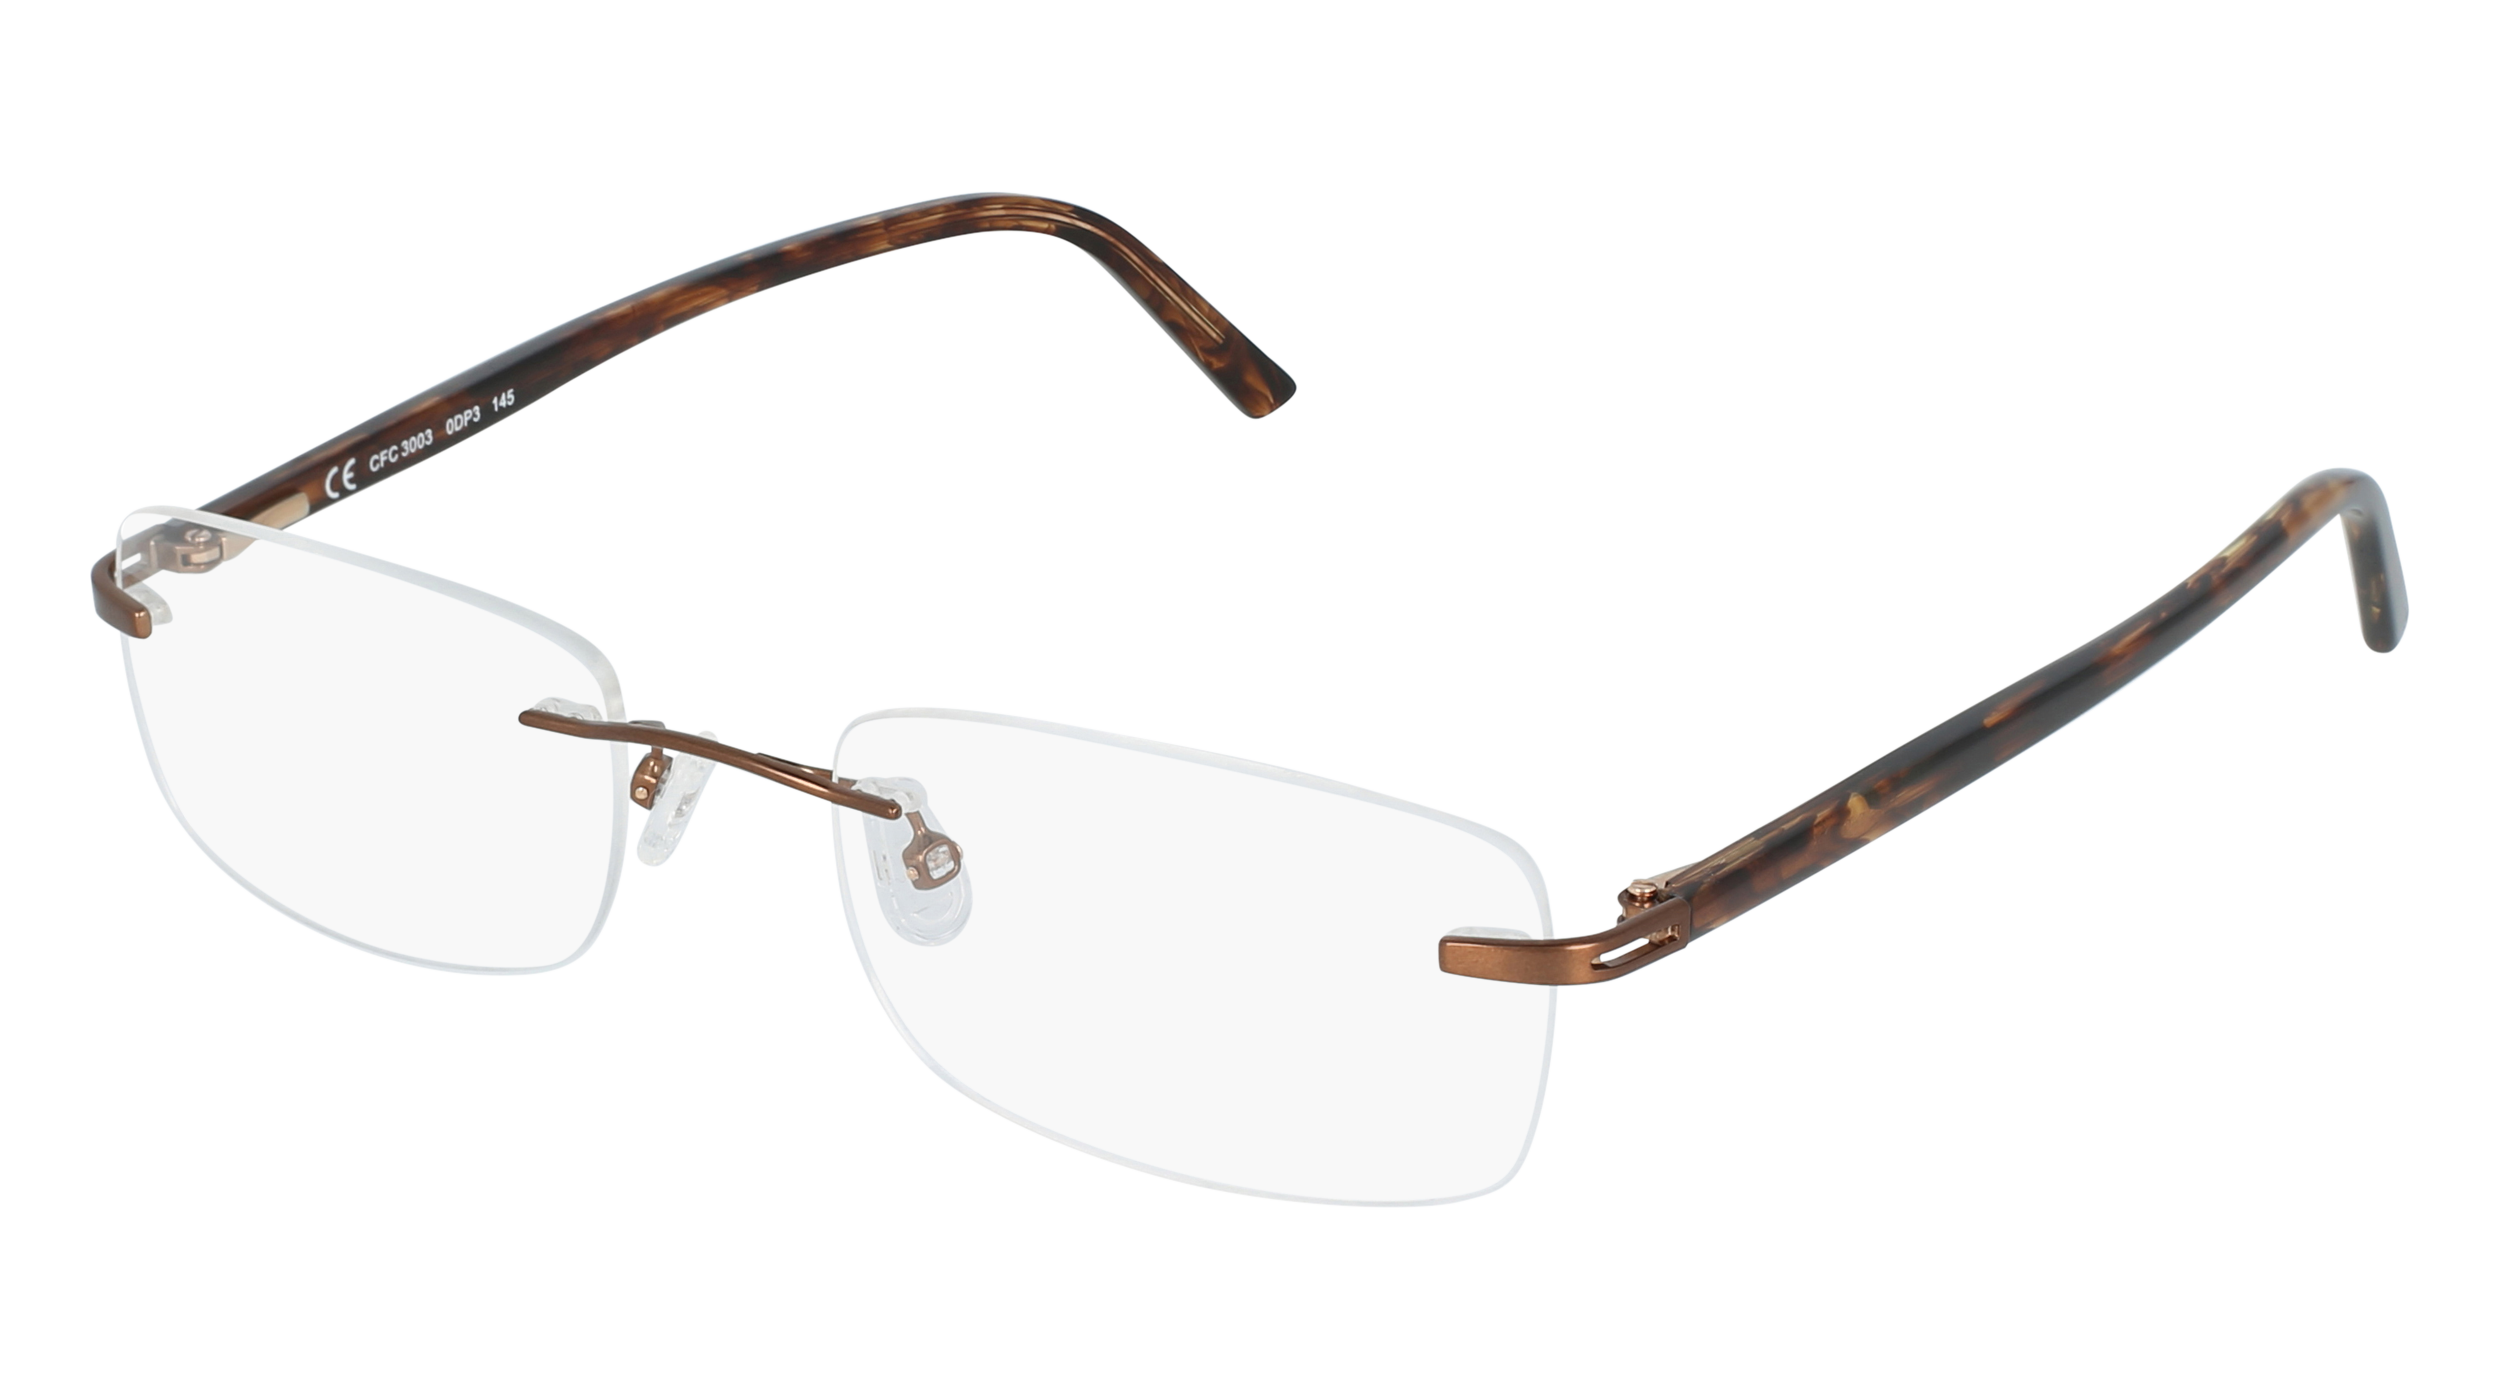 C CFC 3003 men's eyeglasses (from the side)